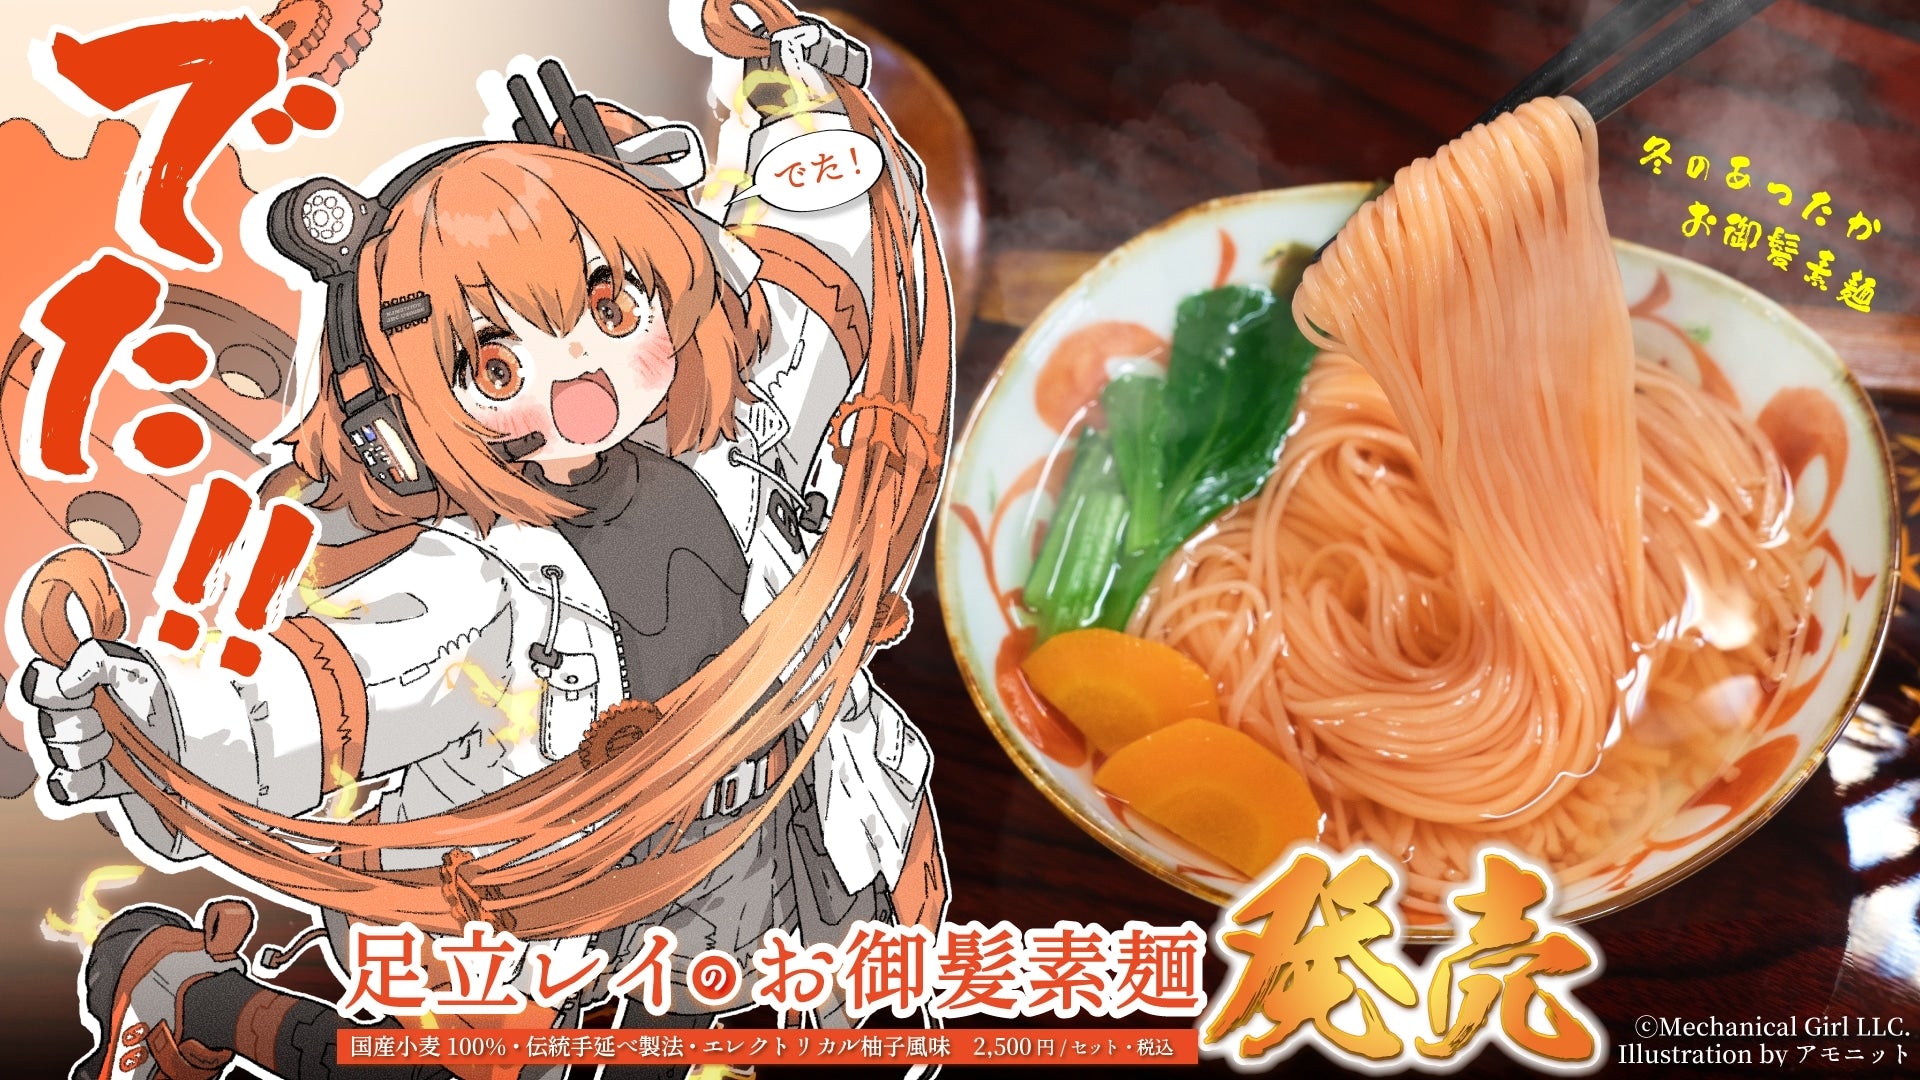 ▶23年冬企画「足立レイのお御髪素麺」販売開始（23/12/01）